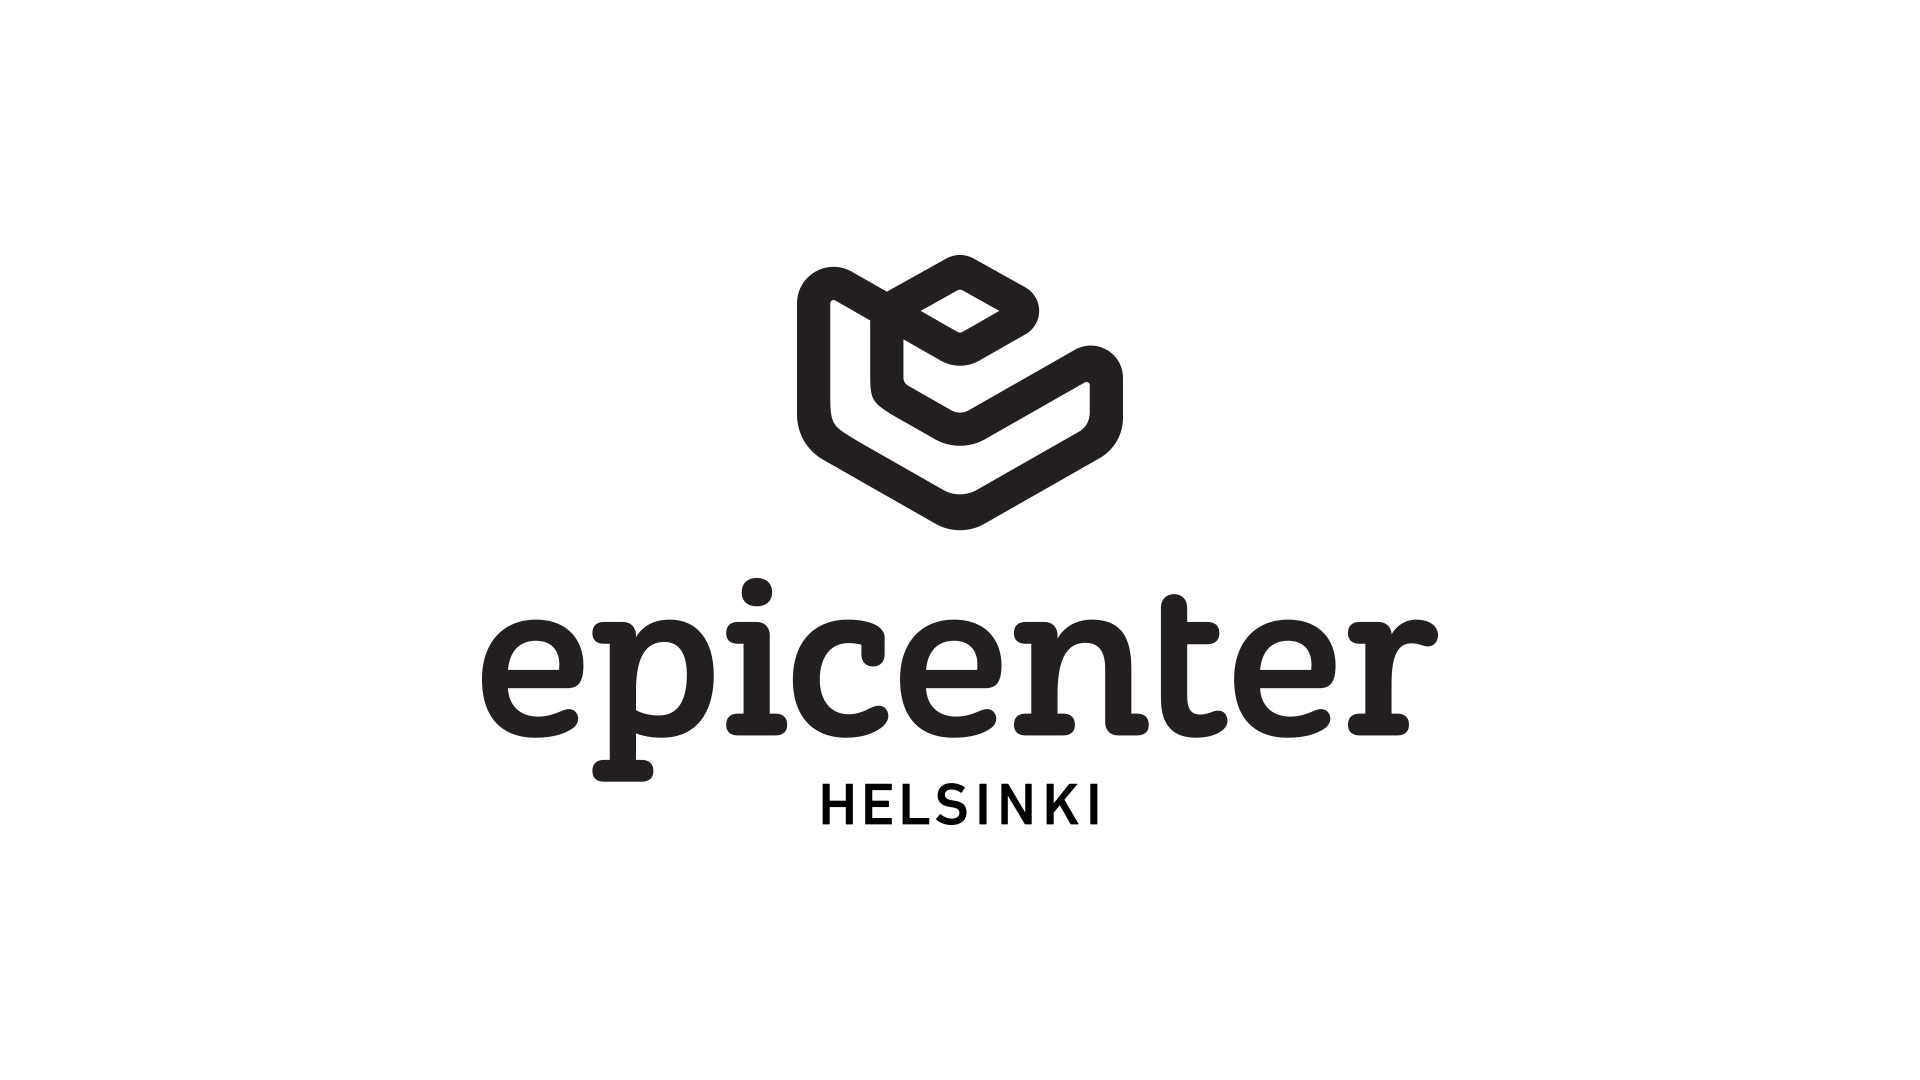 Link to external partner https://weareepicenter.com/helsinki/